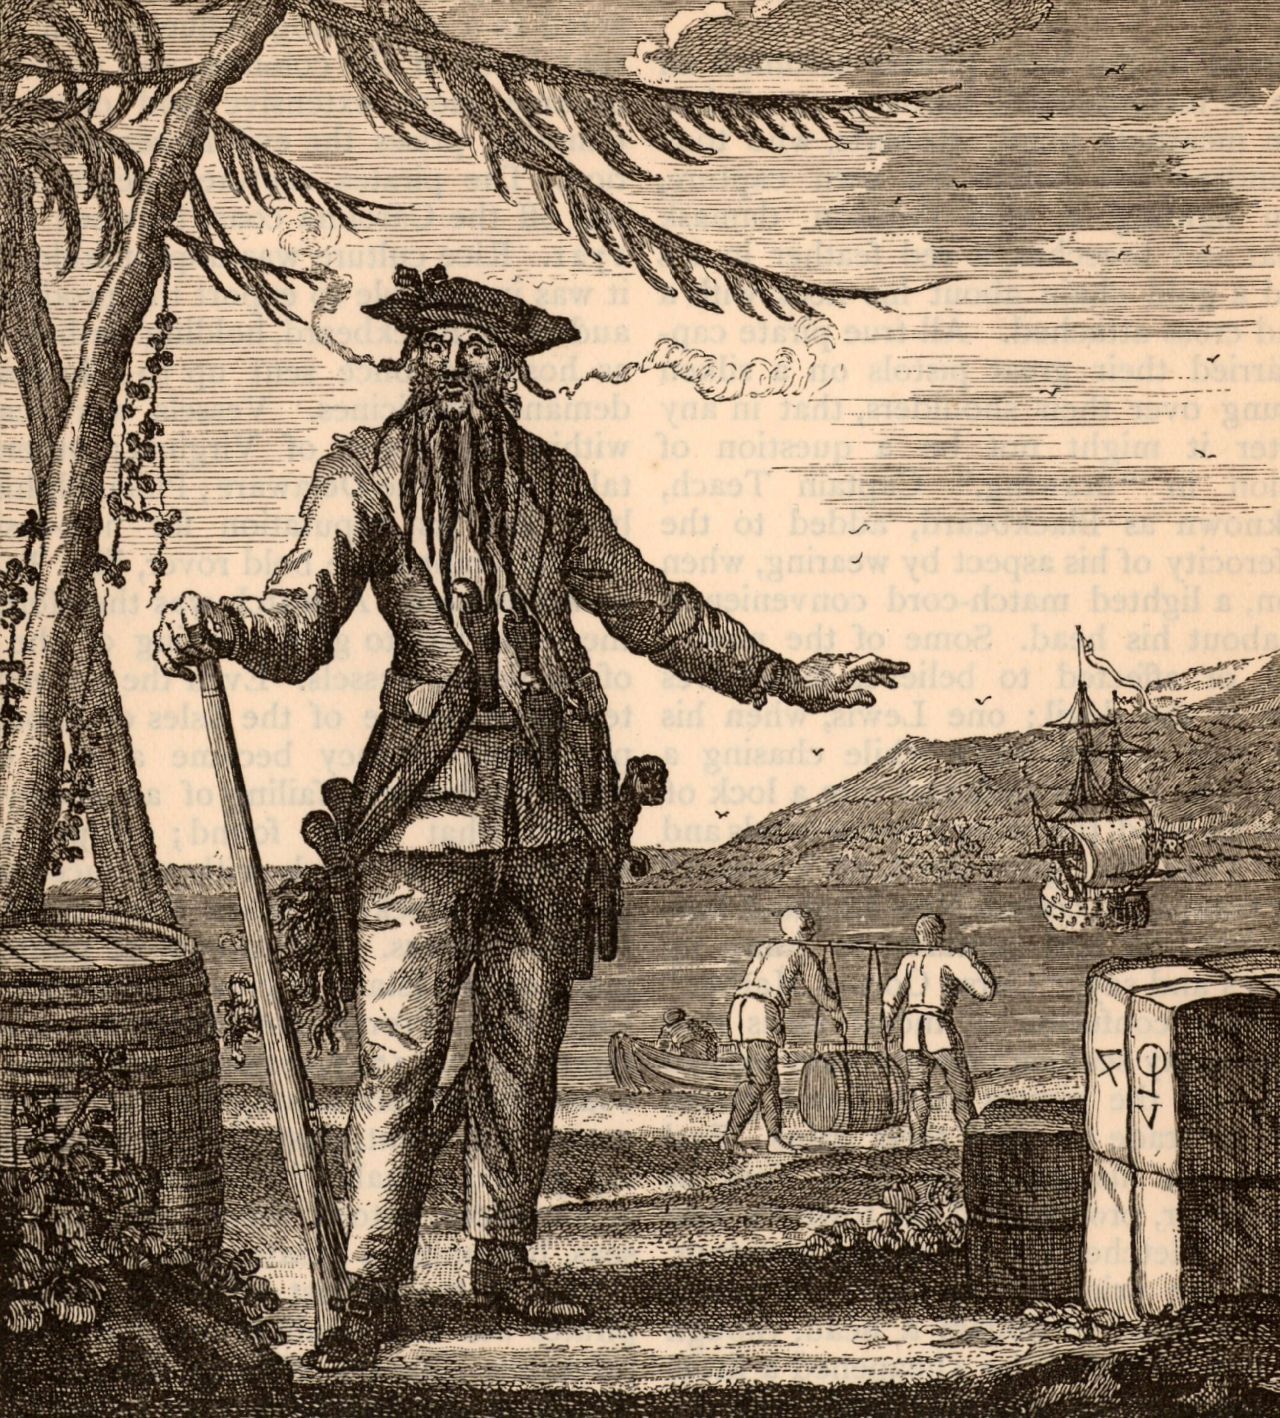 Edward Teach, vermutlich 1680 in Bristol geboren, kaperte anfangs feindliche Schiffe für die britische Krone. Als er unter eigener Flagge im Oktober 1717 an der amerikanischen Ostküste mindestens 15 Schiffe in seine Gewalt brachte, wurde er schlagartig zu einem der gefürchtetsten Piraten. Einen Monat später eroberte er in der Karibik das 250 Tonnen schwere Sklaven-Transportschiff "La Concorde", das über 40 Kanonen-Stellplätze